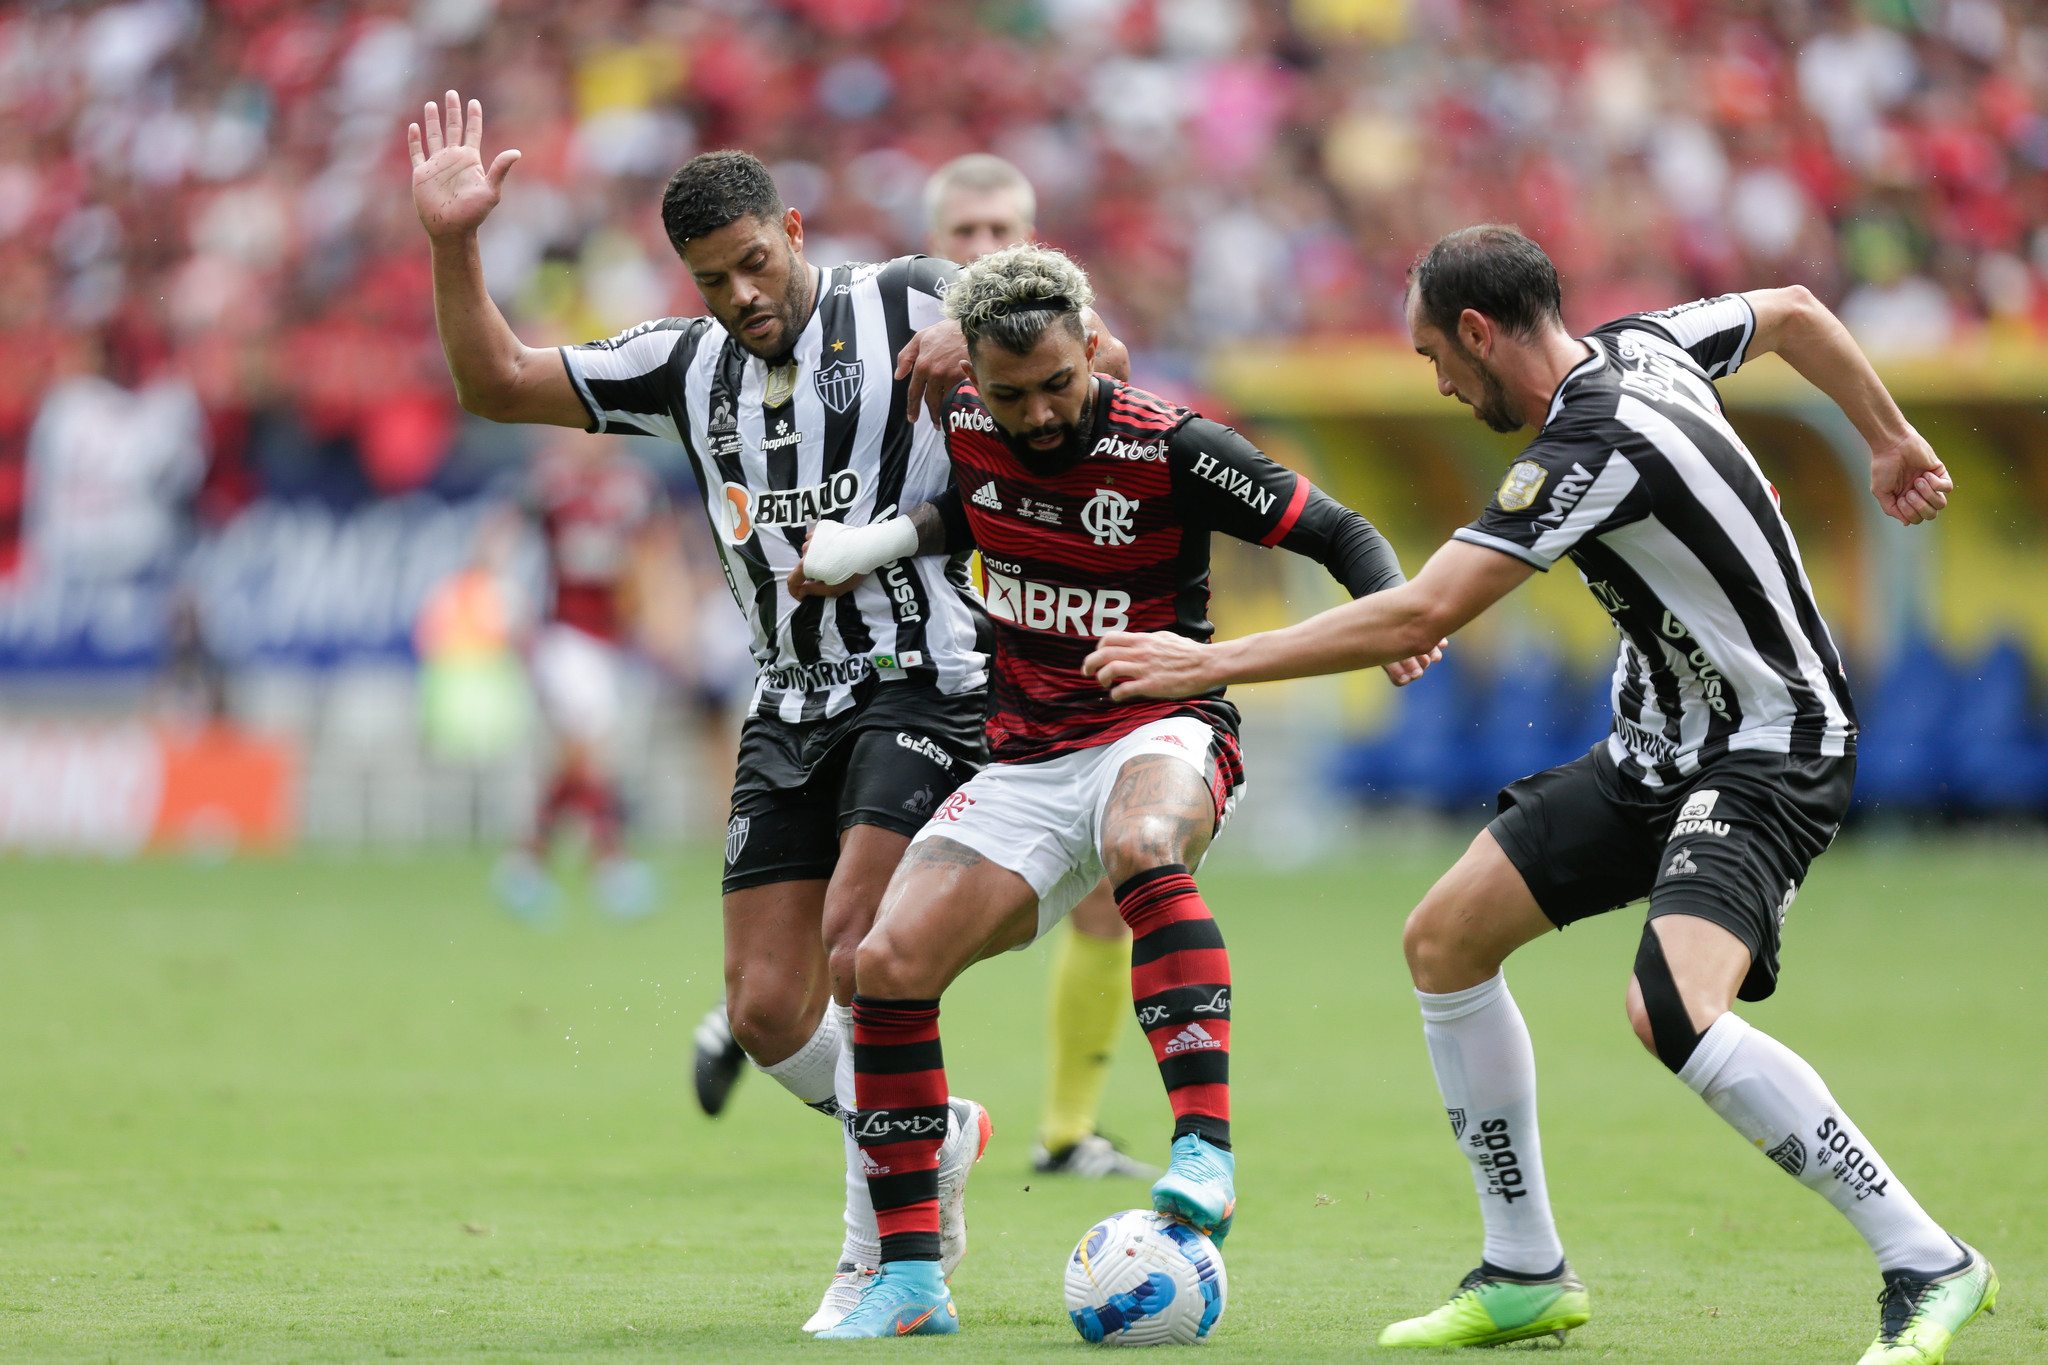 Atlético x Flamengo: venda de ingressos começa nesta quarta – Clube  Atlético Mineiro